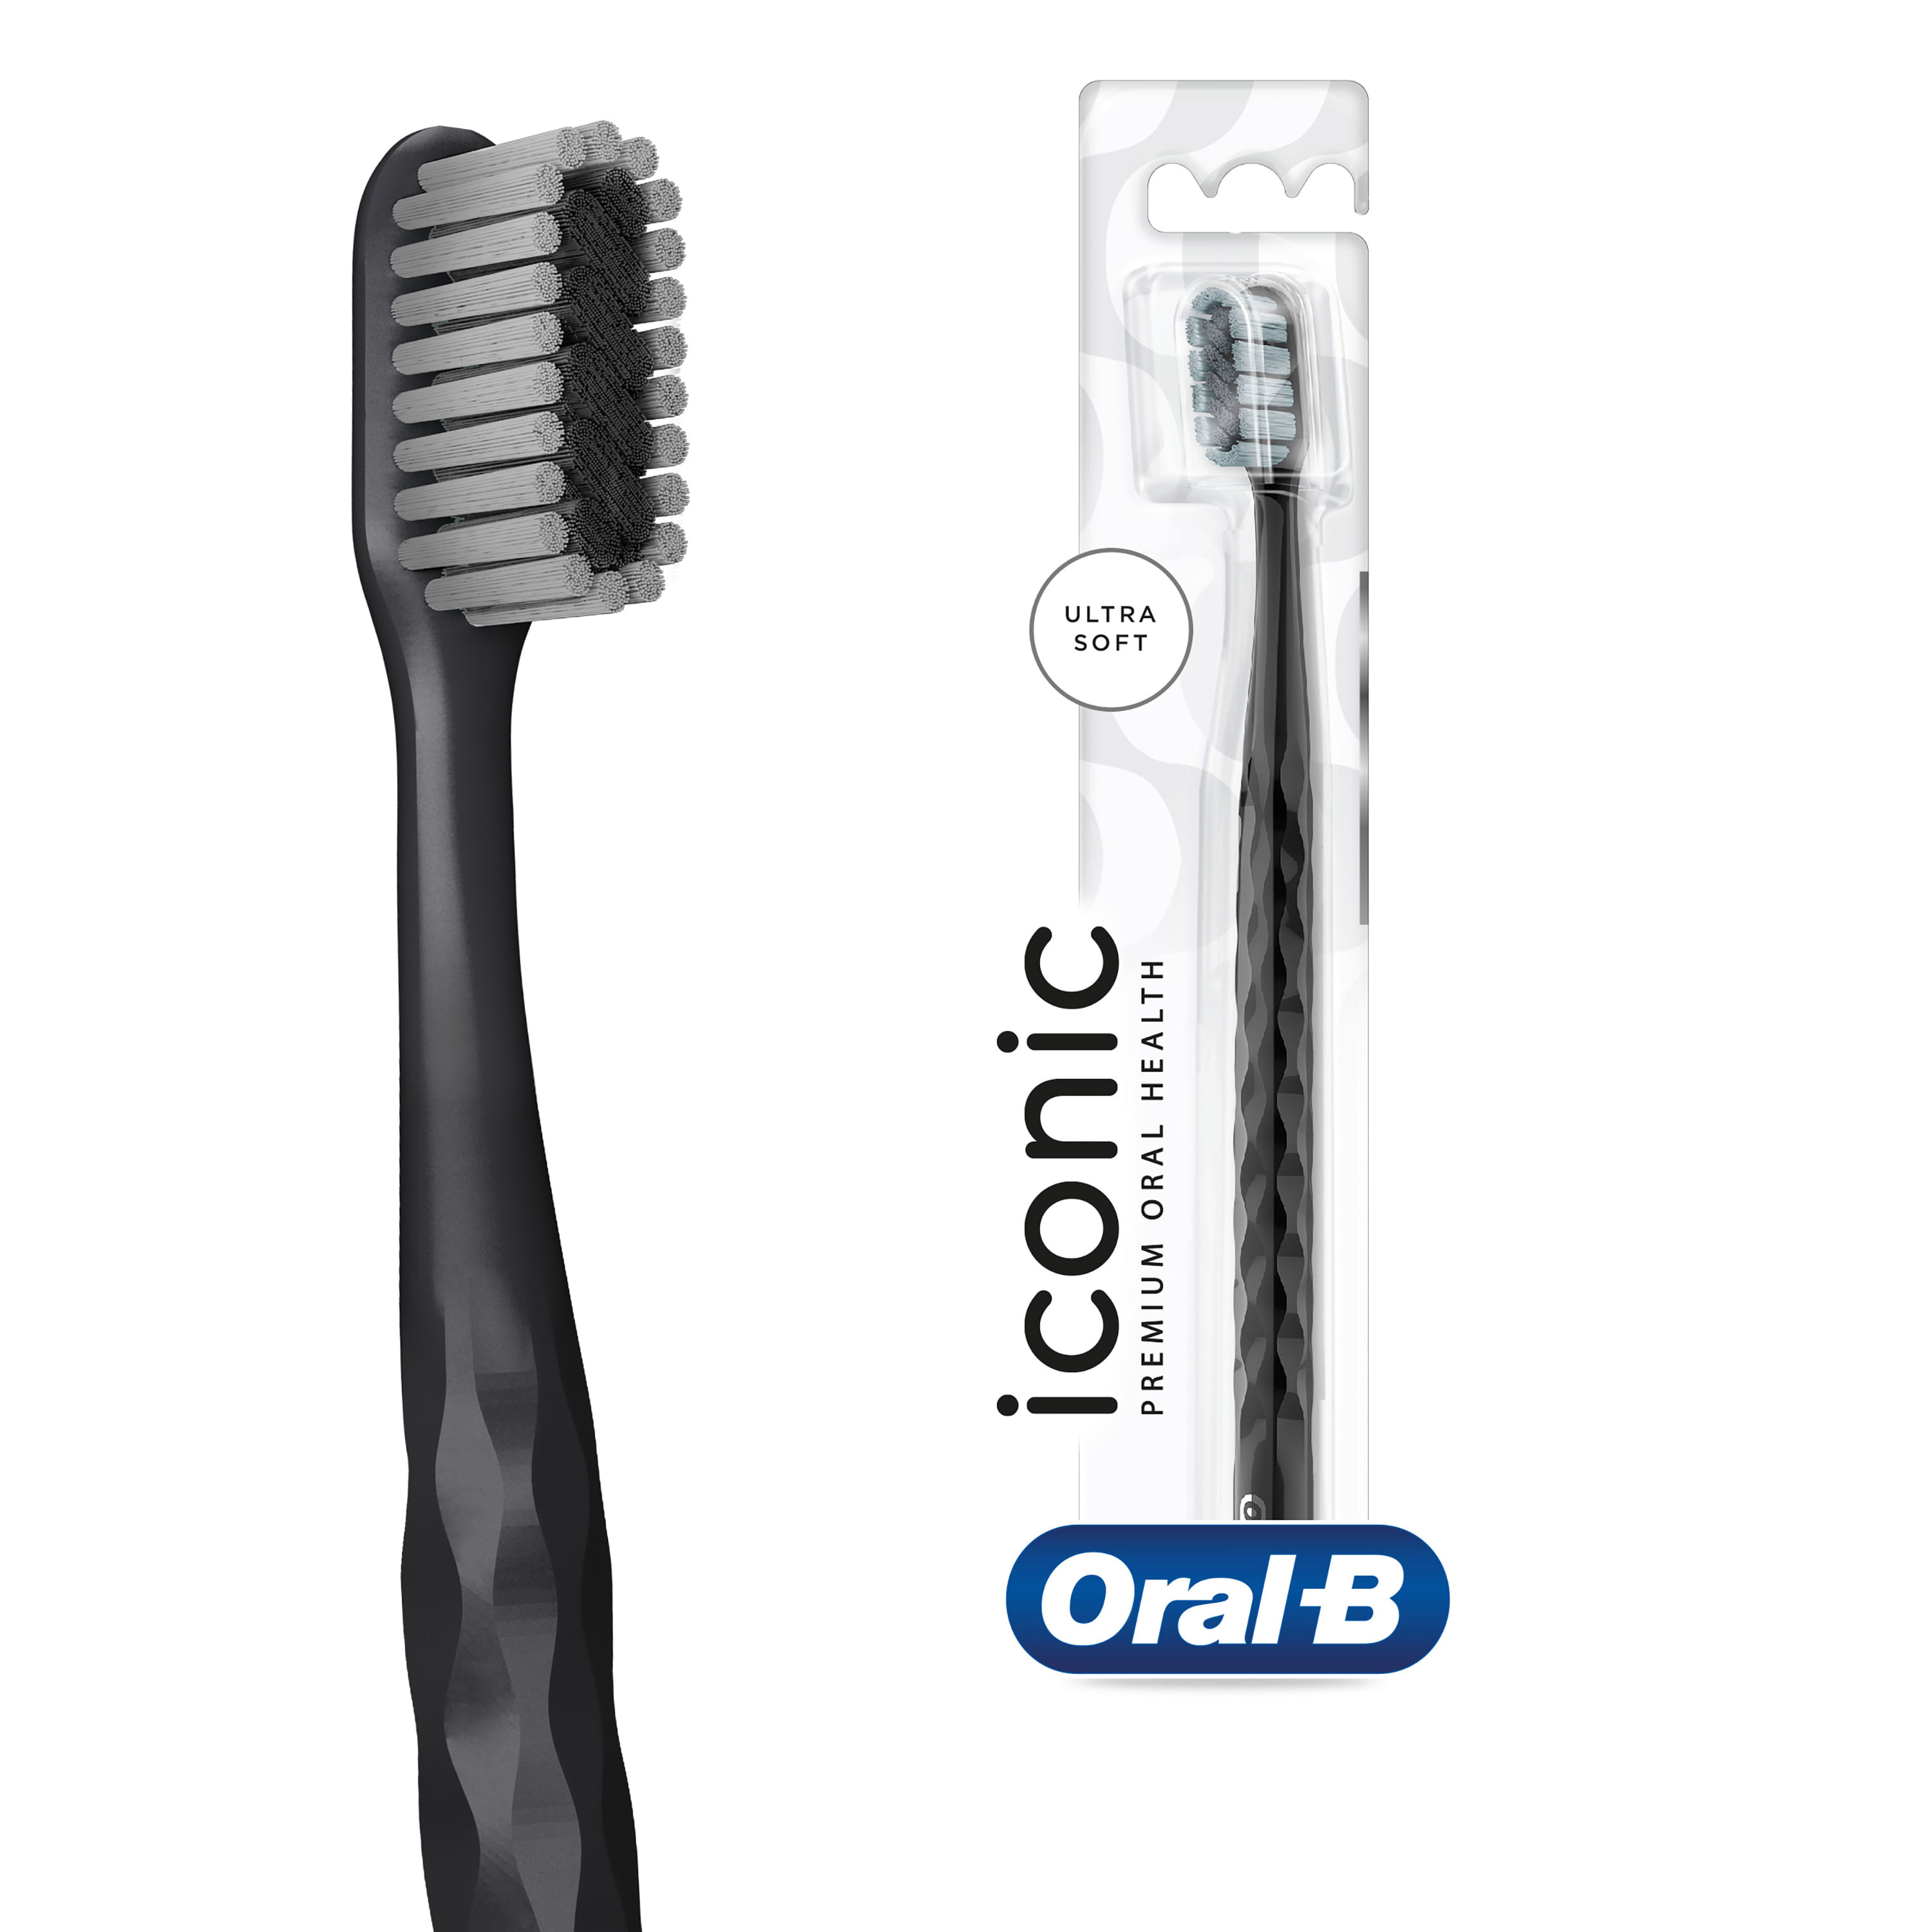 Cepillo dental limpieza suave blister 3 unidades · VECKIA · Supermercado El  Corte Inglés El Corte Inglés